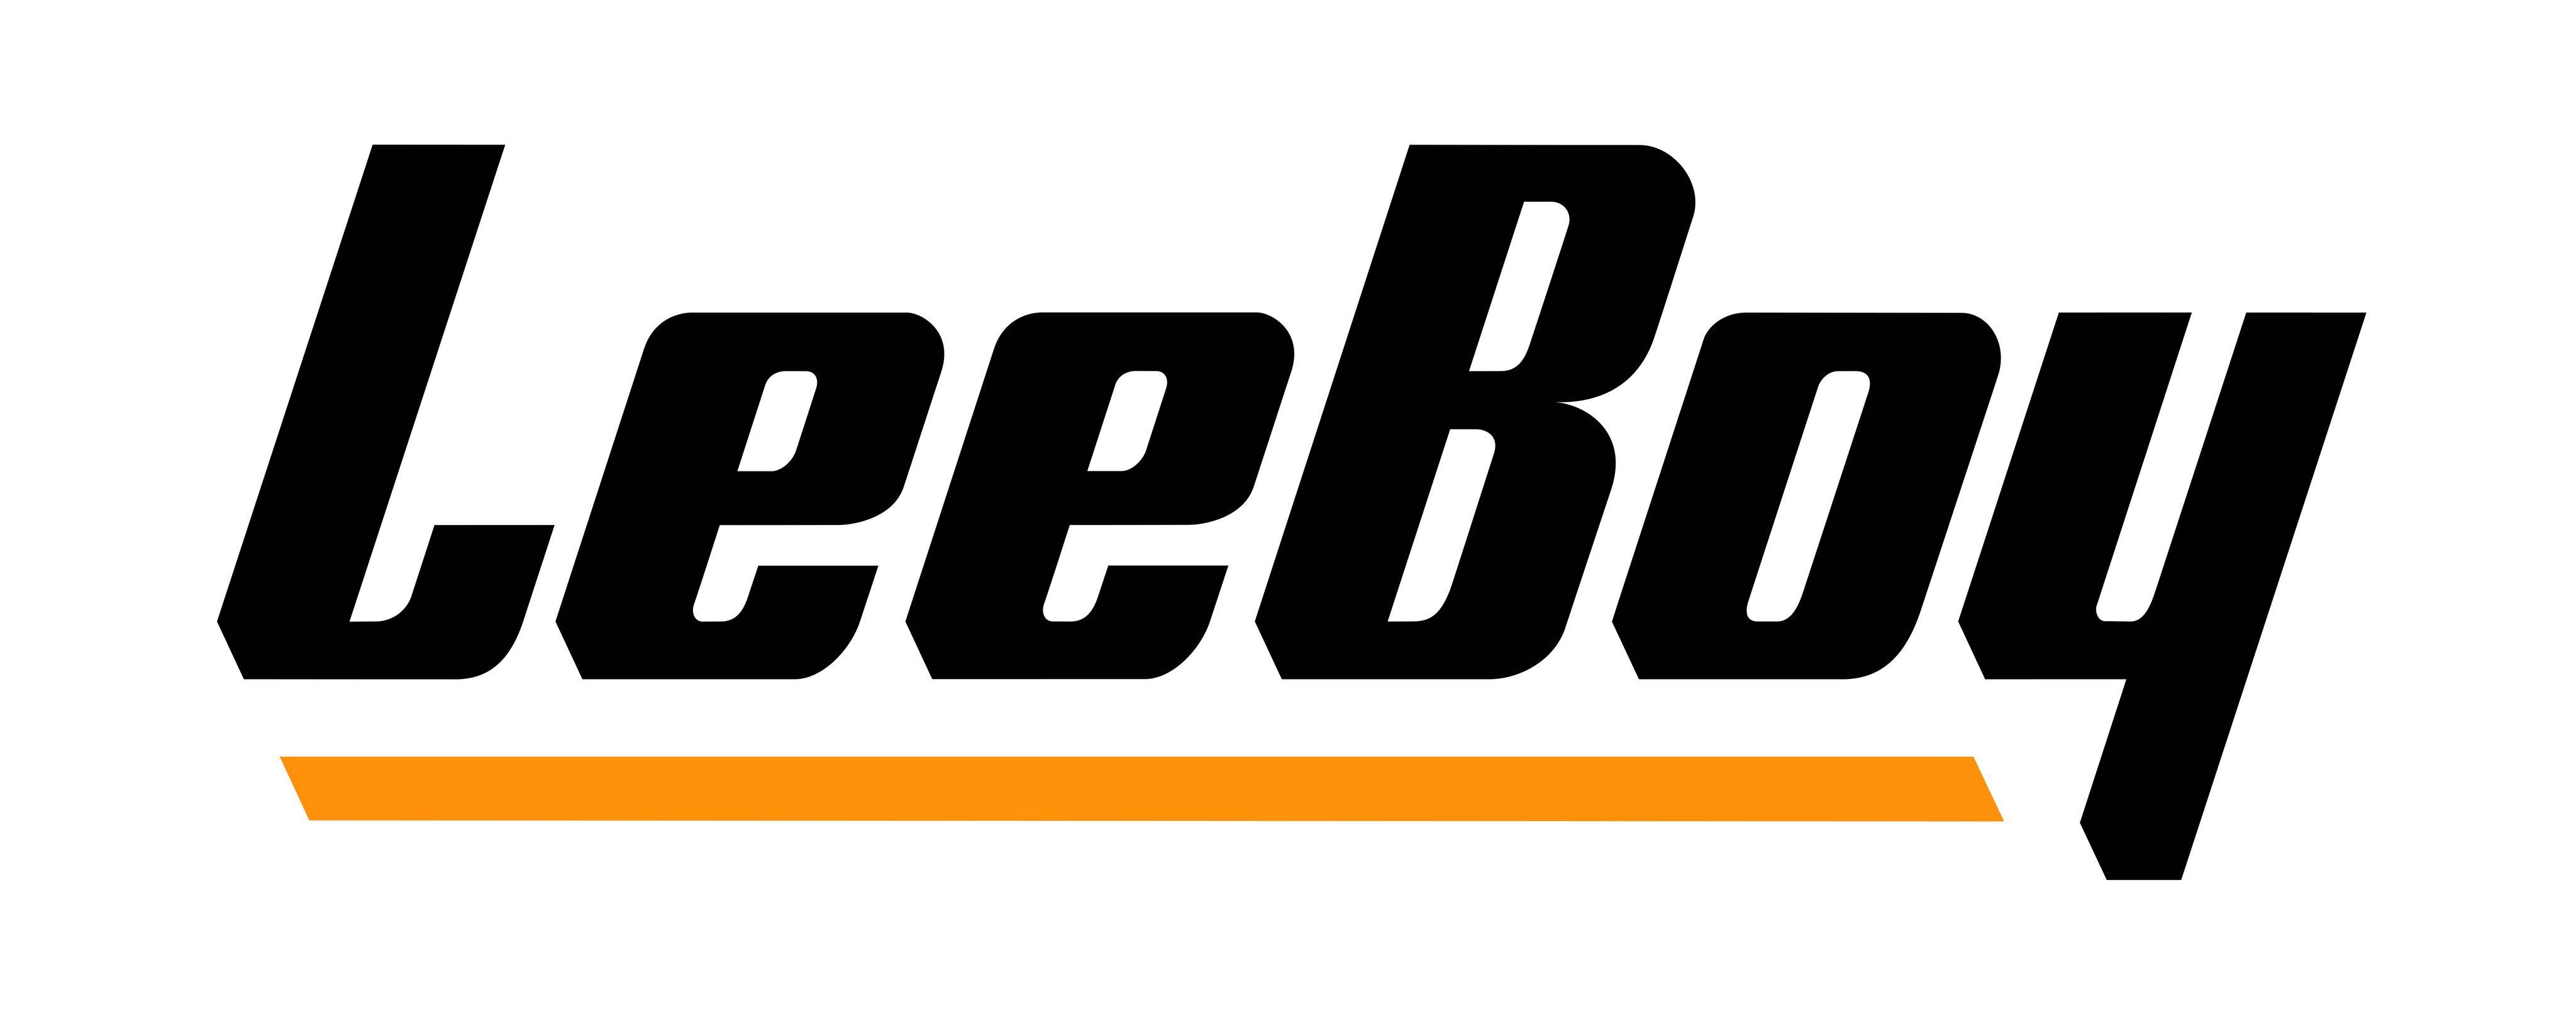 Leeboy Logo - Logo LeeBoy